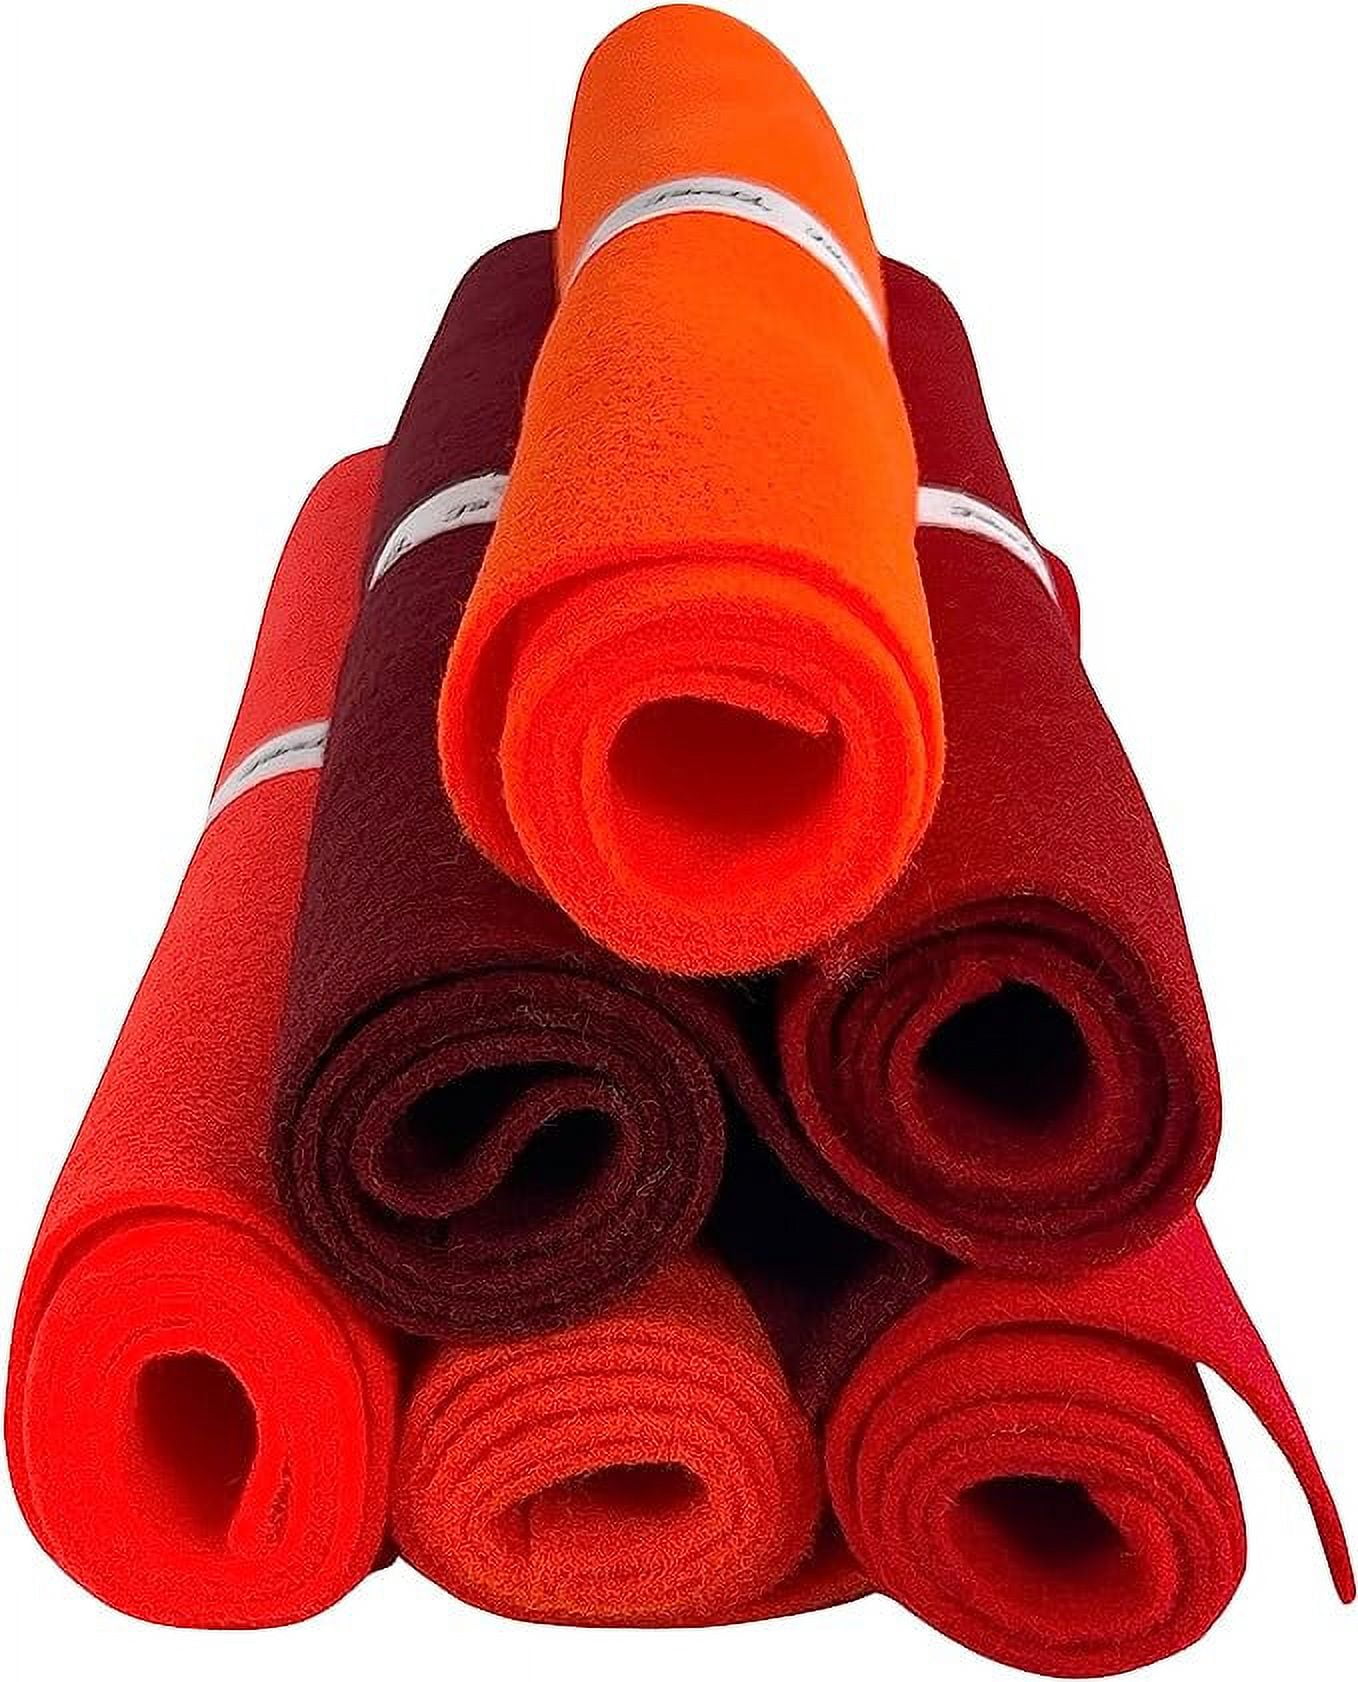 Red Felt 12 x 10 Yard Roll - Soft Premium Felt Fabric